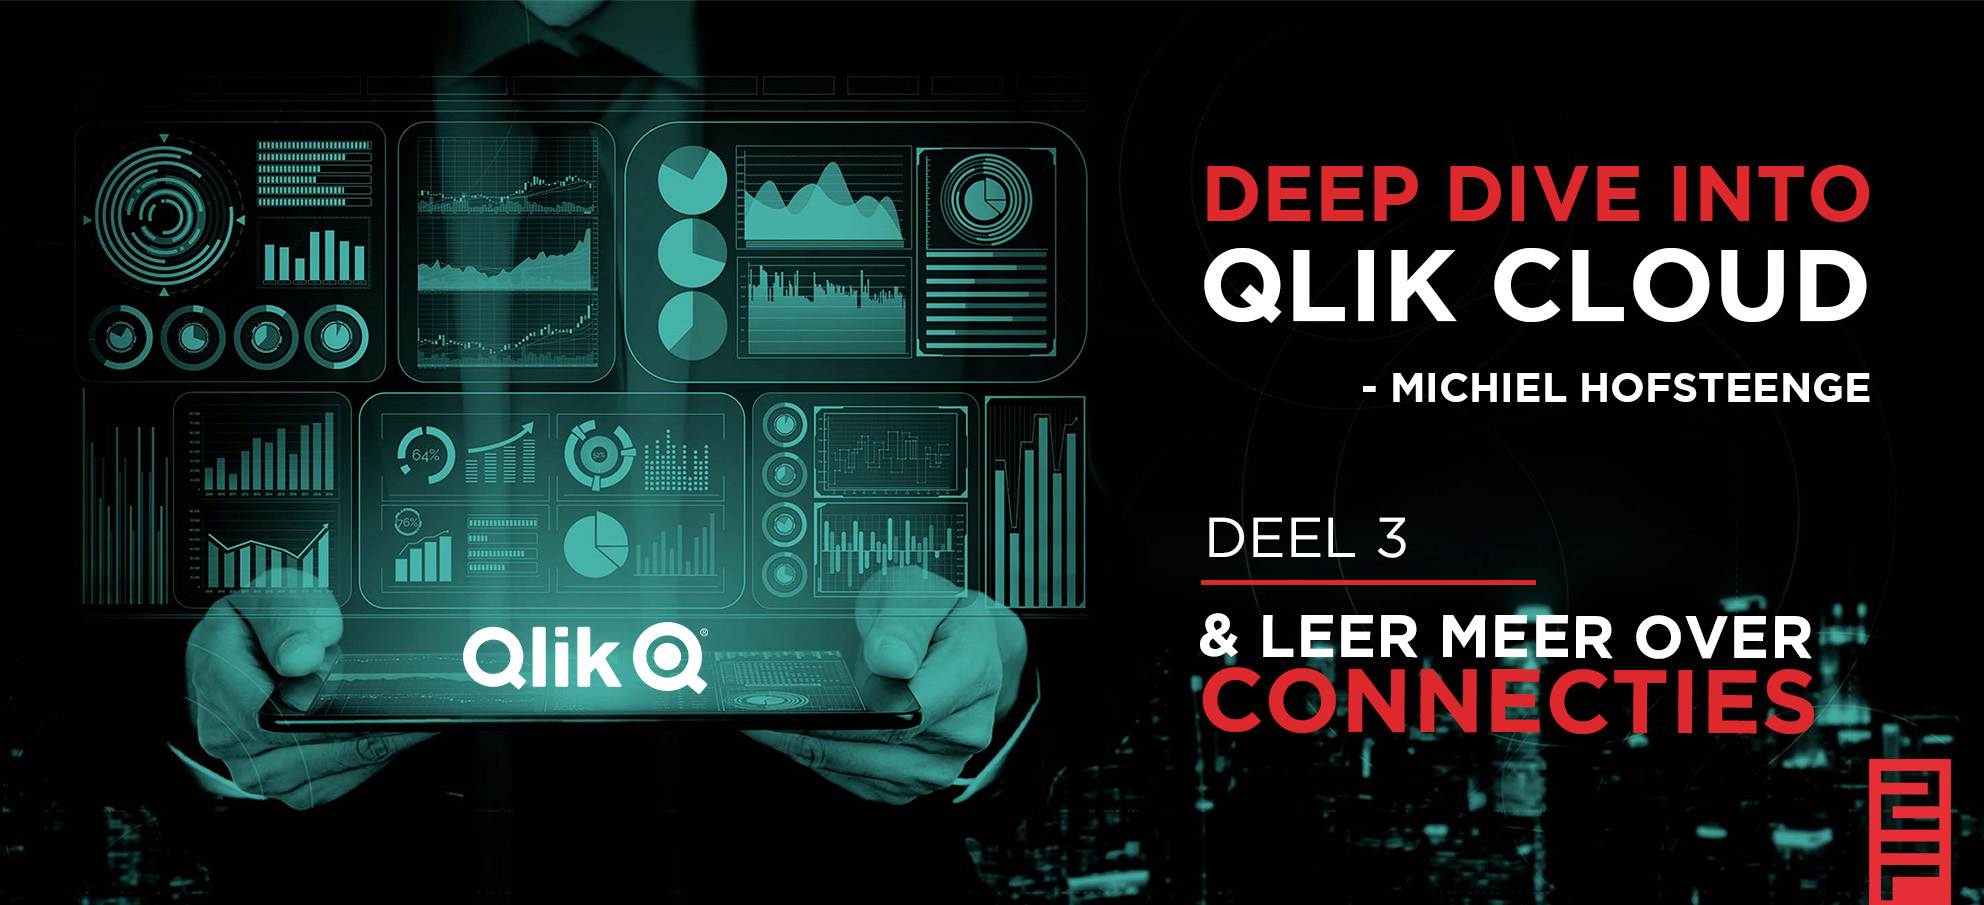 Deep-dive-into-qlik-cloud-connectes-2foqus data analytics